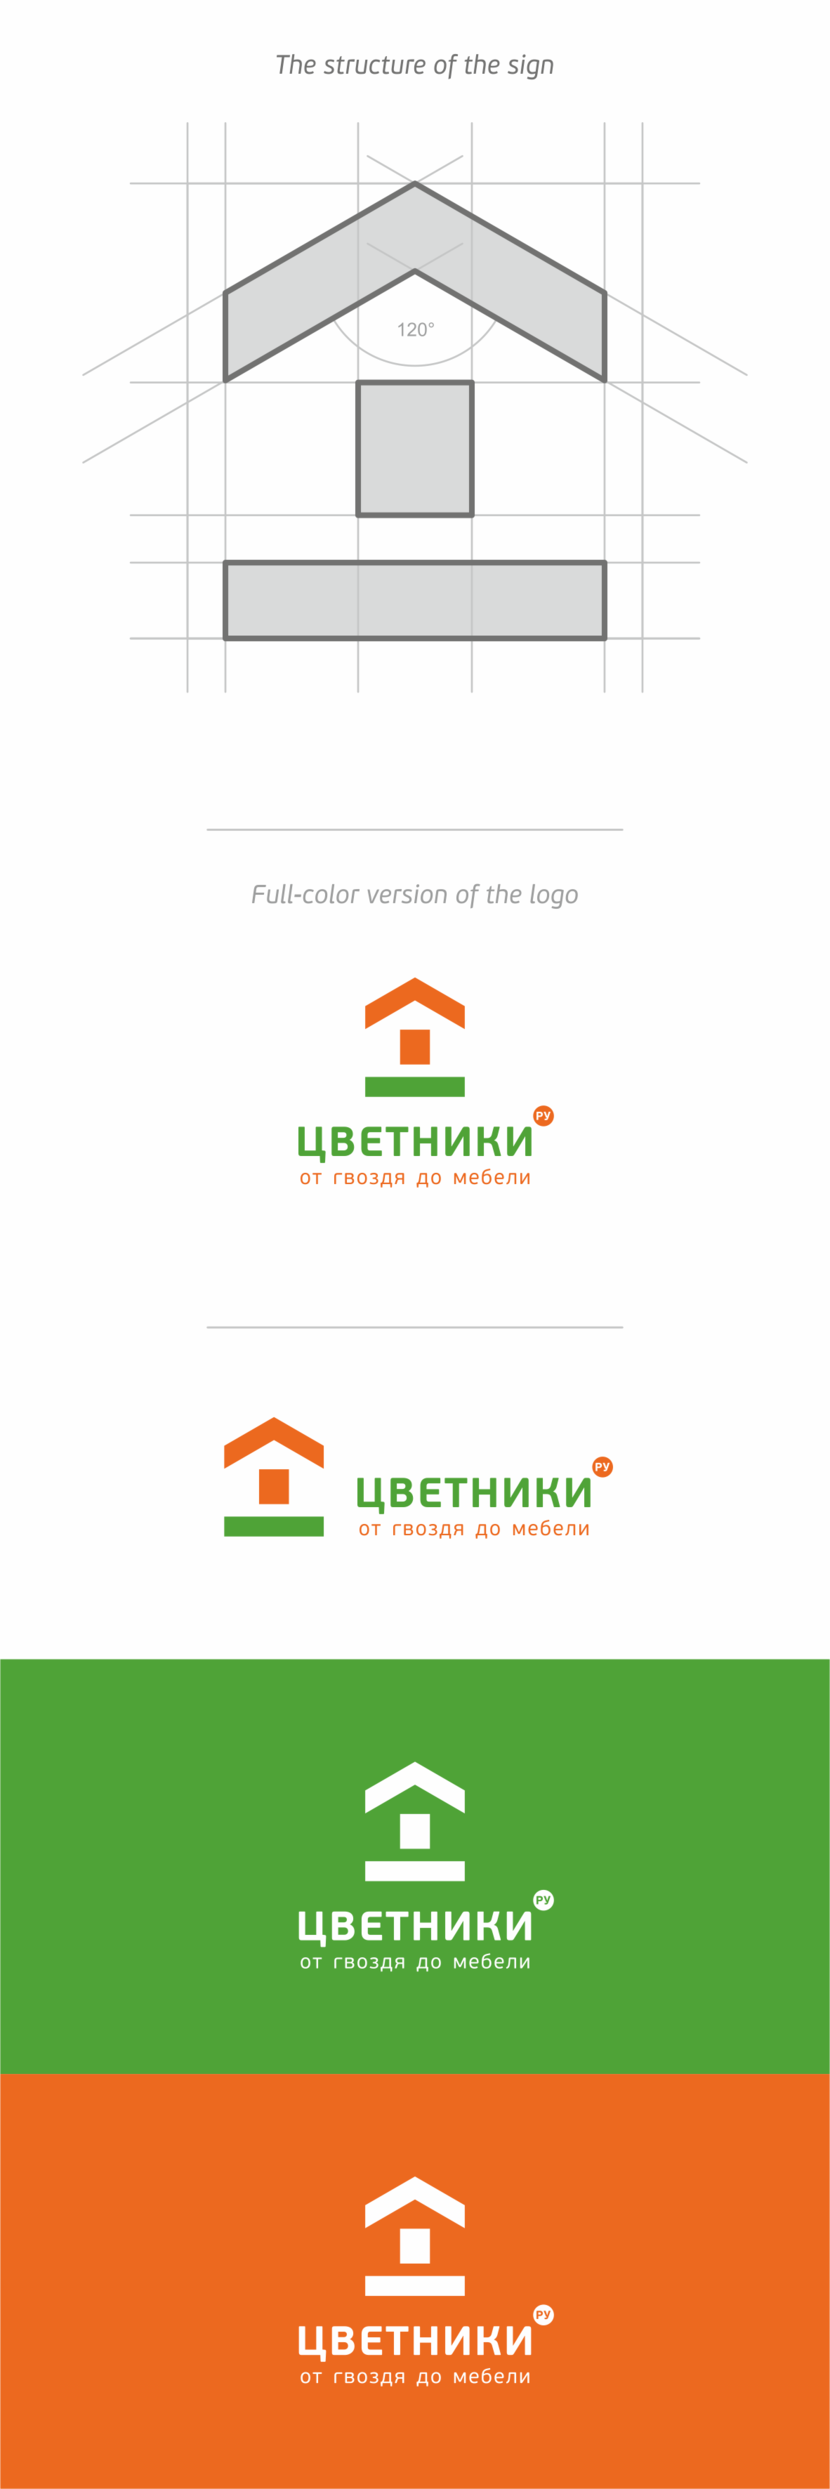 + цвета любые!) - Разработать логотип интернет-магазина